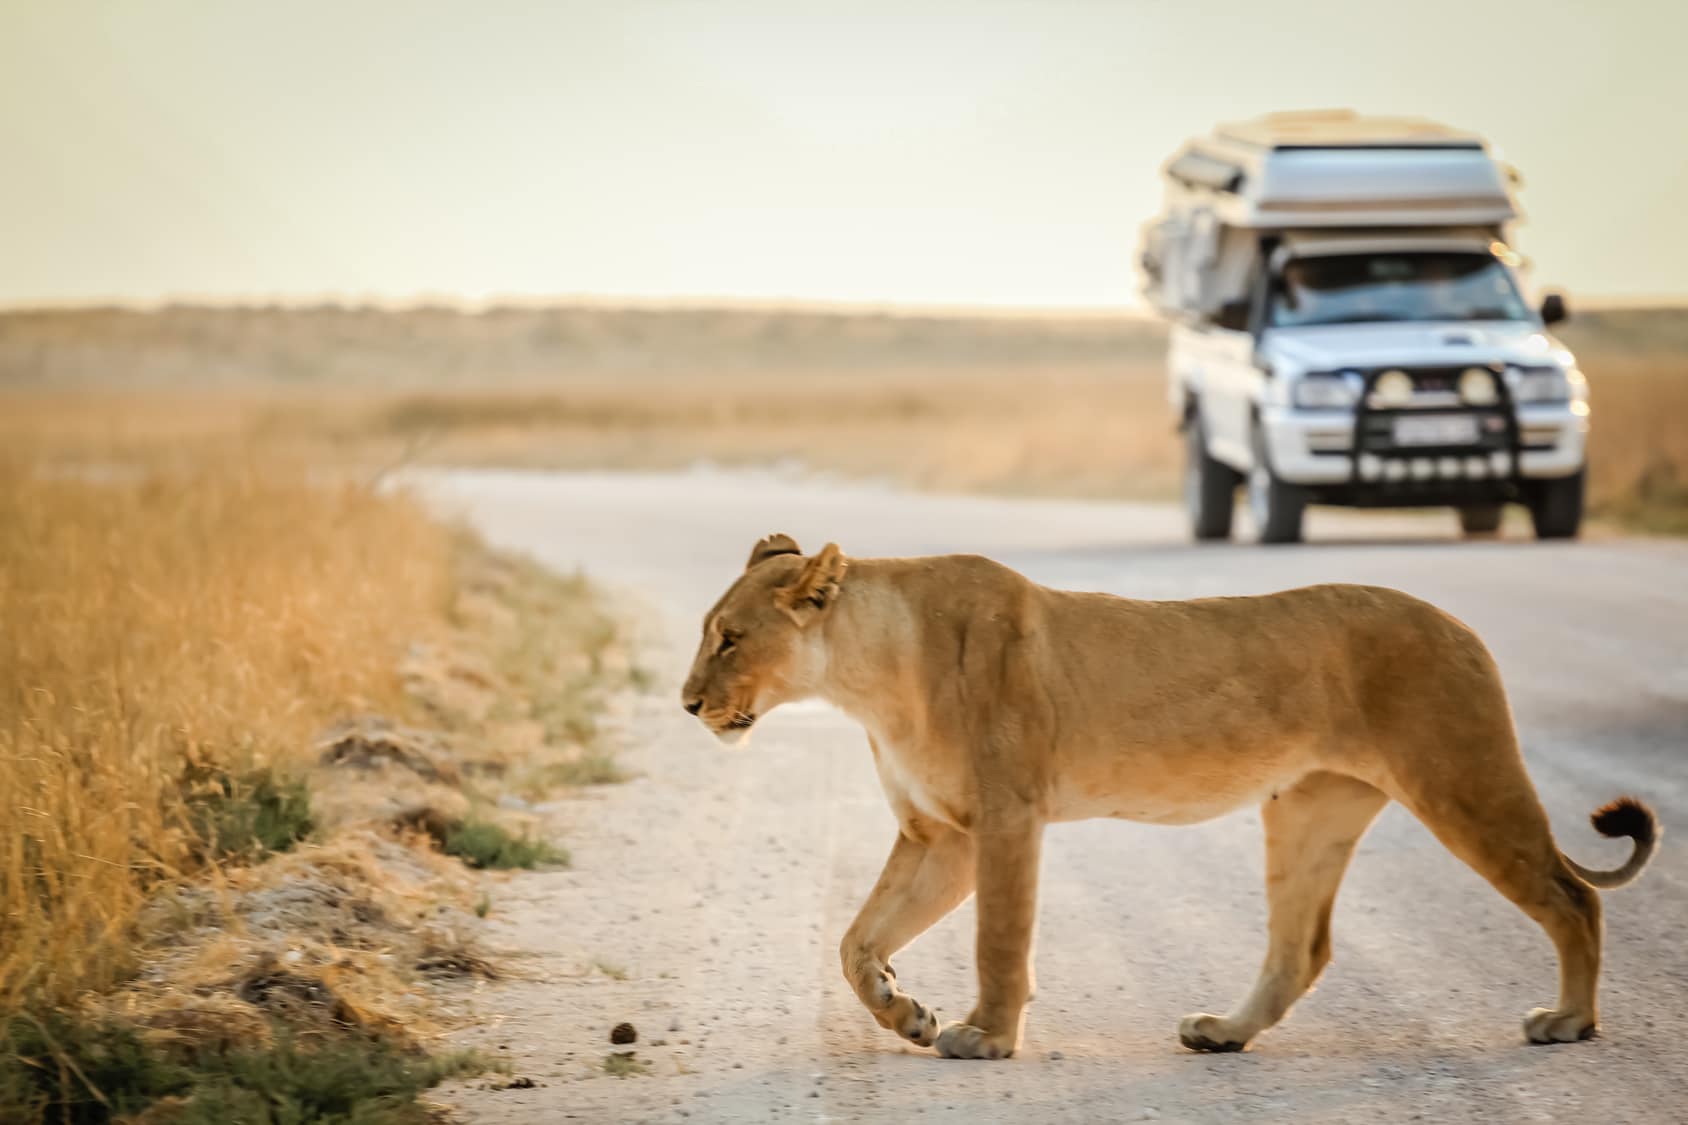 𝐂𝐫𝐨𝐢𝐬𝐢𝐄𝐮𝐫𝐨𝐩𝐞 reprend ses safaris-croisières en Afrique Australe